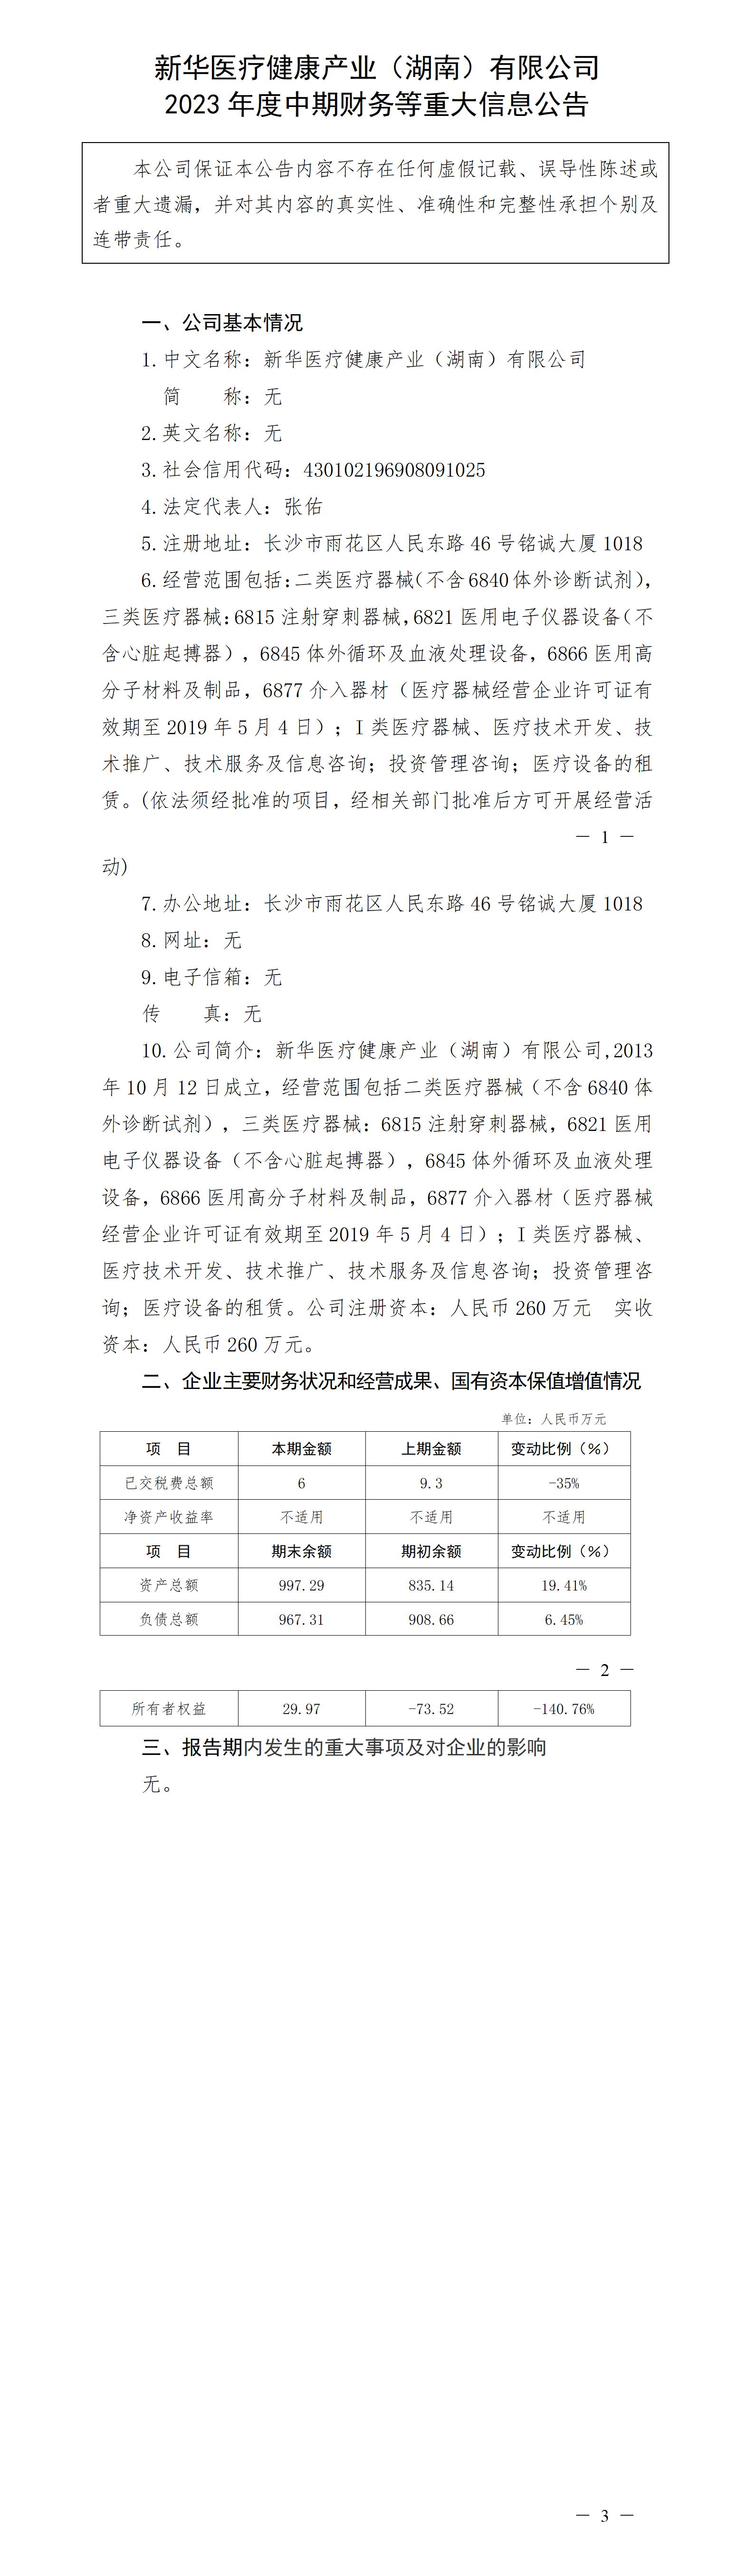 新華醫療健康產業（湖南）有限公司2023年度中期財務等重大信息公告_01.jpg